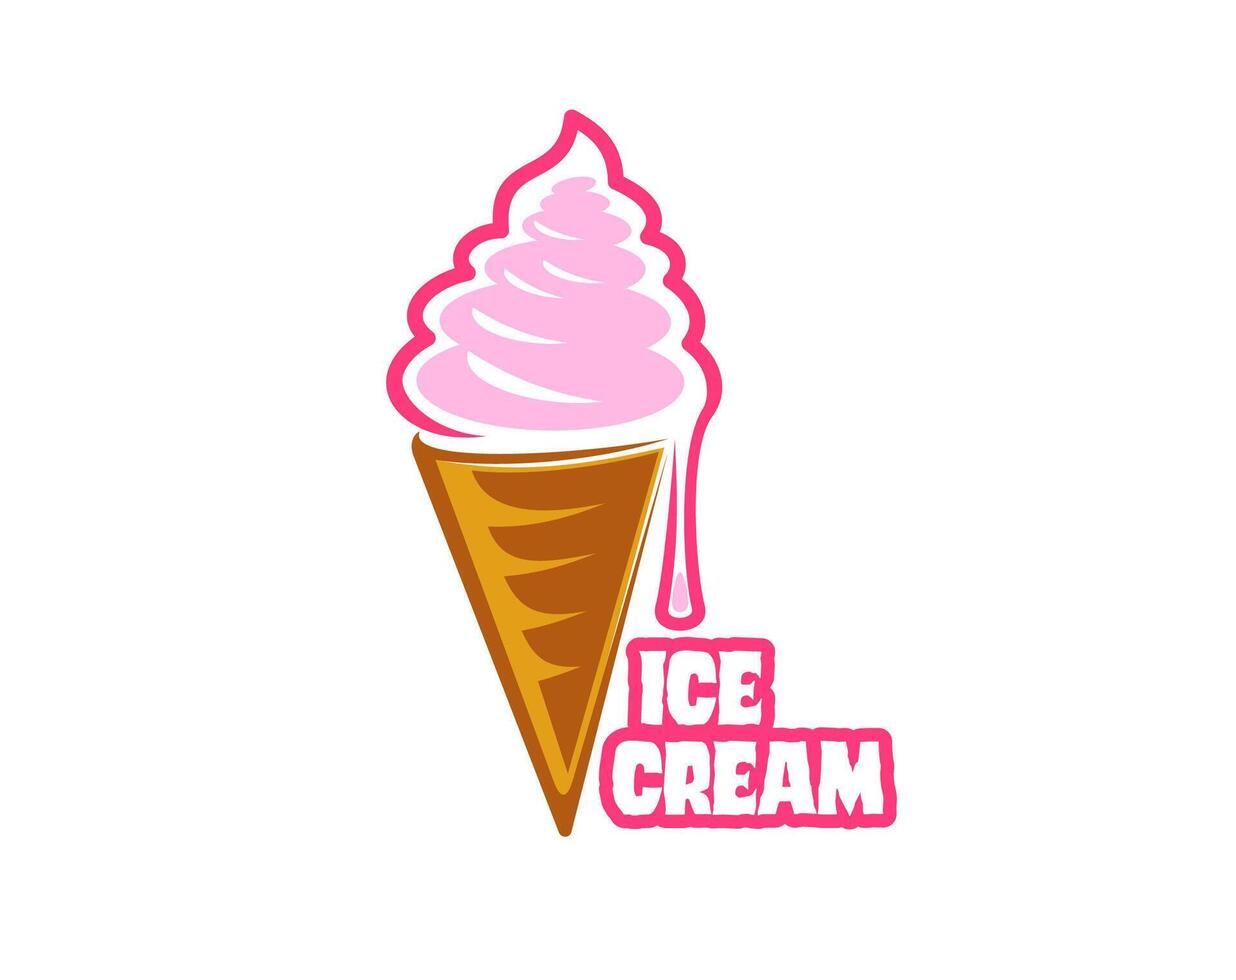 gelato dessert, fraise la glace crème dans tranche cône vecteur